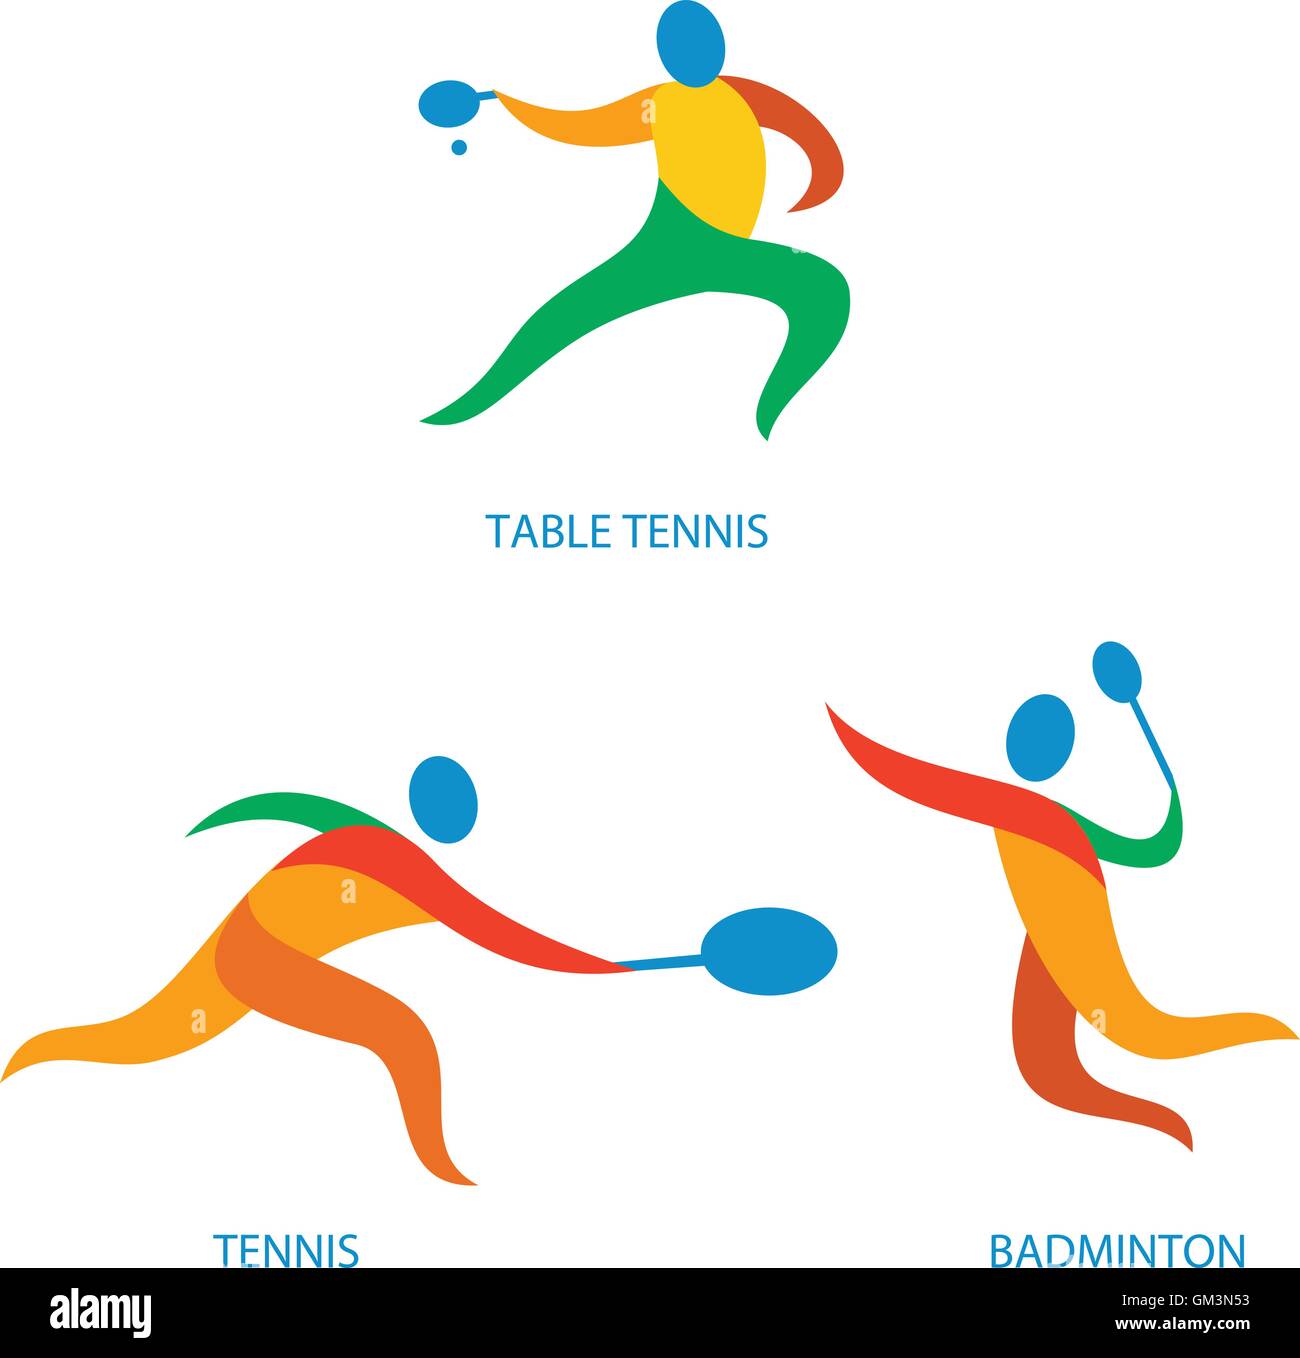 Ping Pong Icona di Badminton Illustrazione Vettoriale